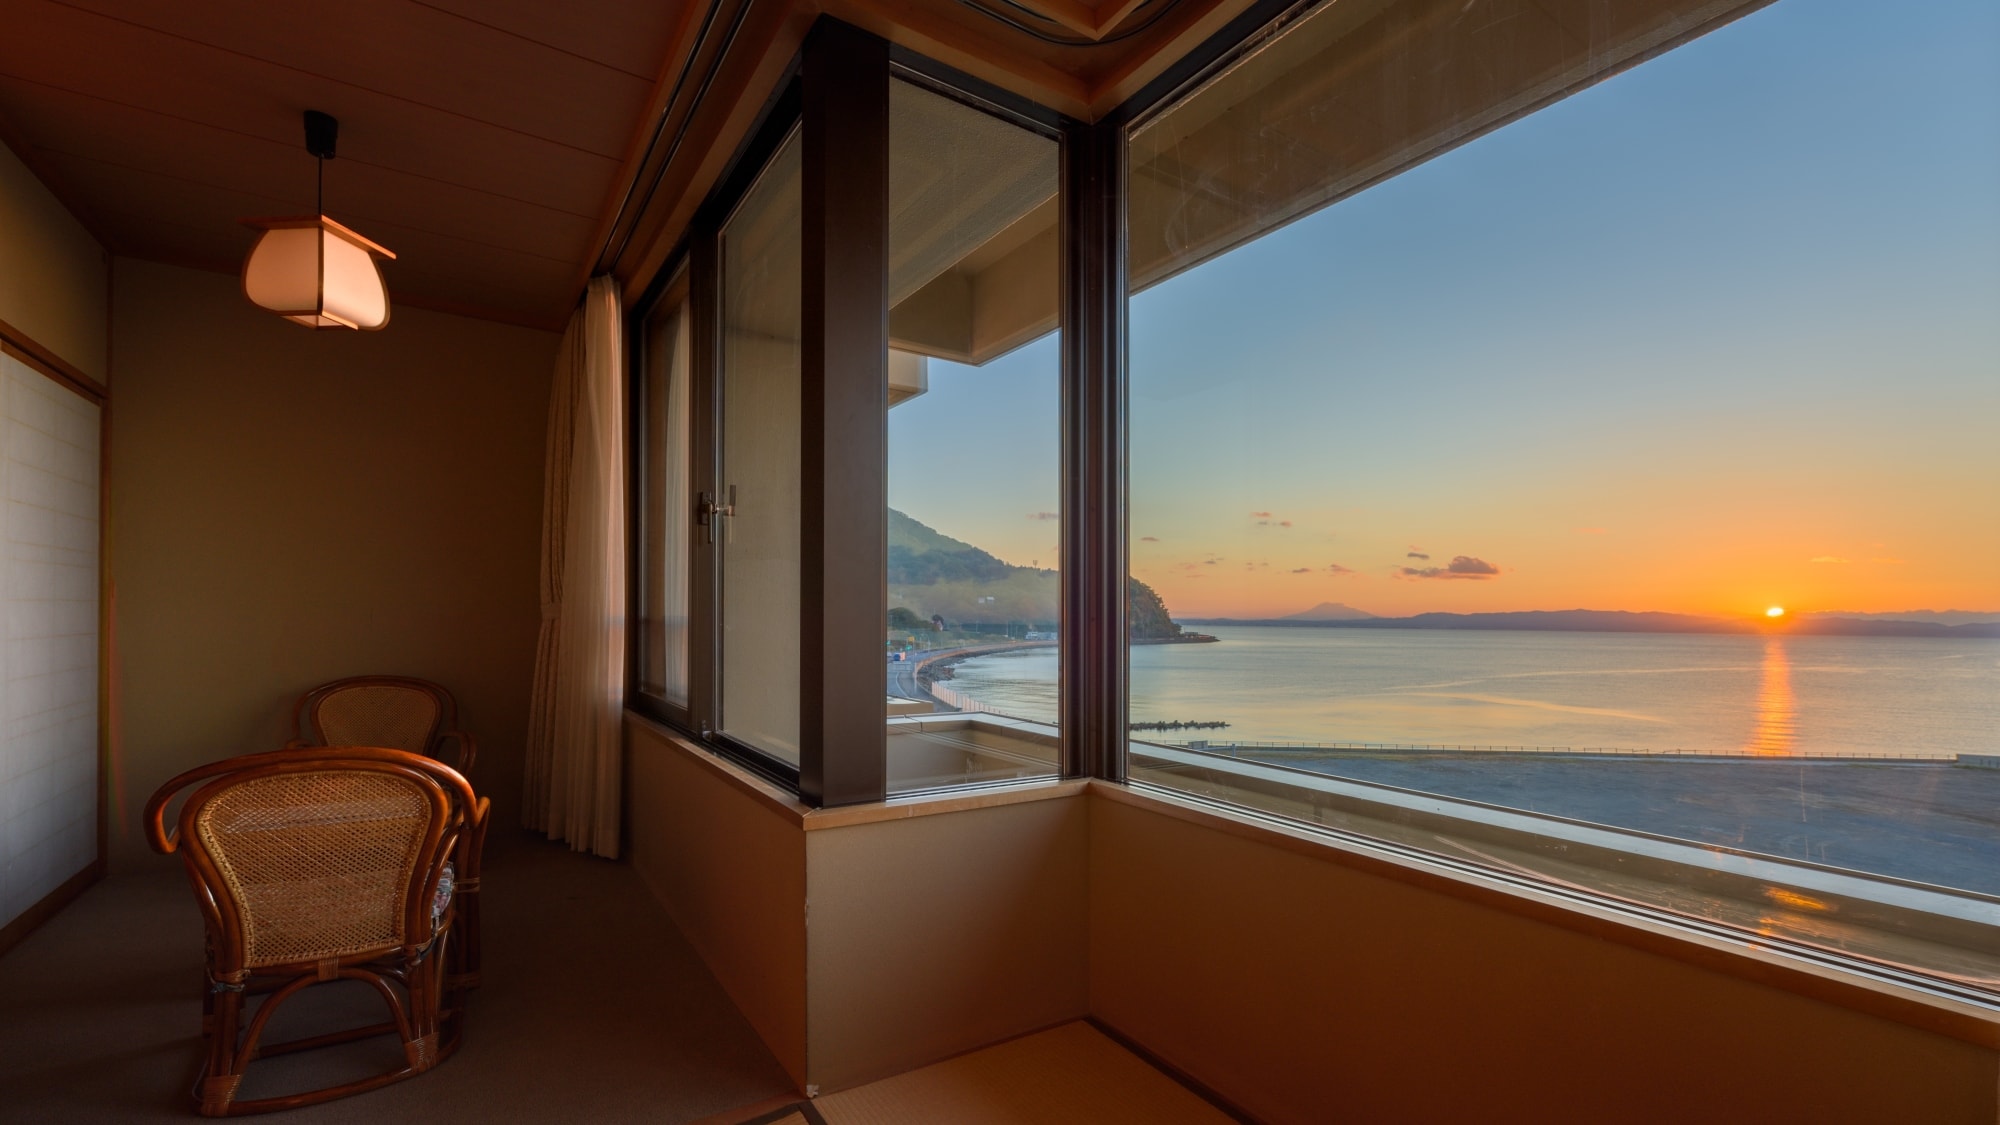 Semua kamar bergaya Jepang memiliki pemandangan laut